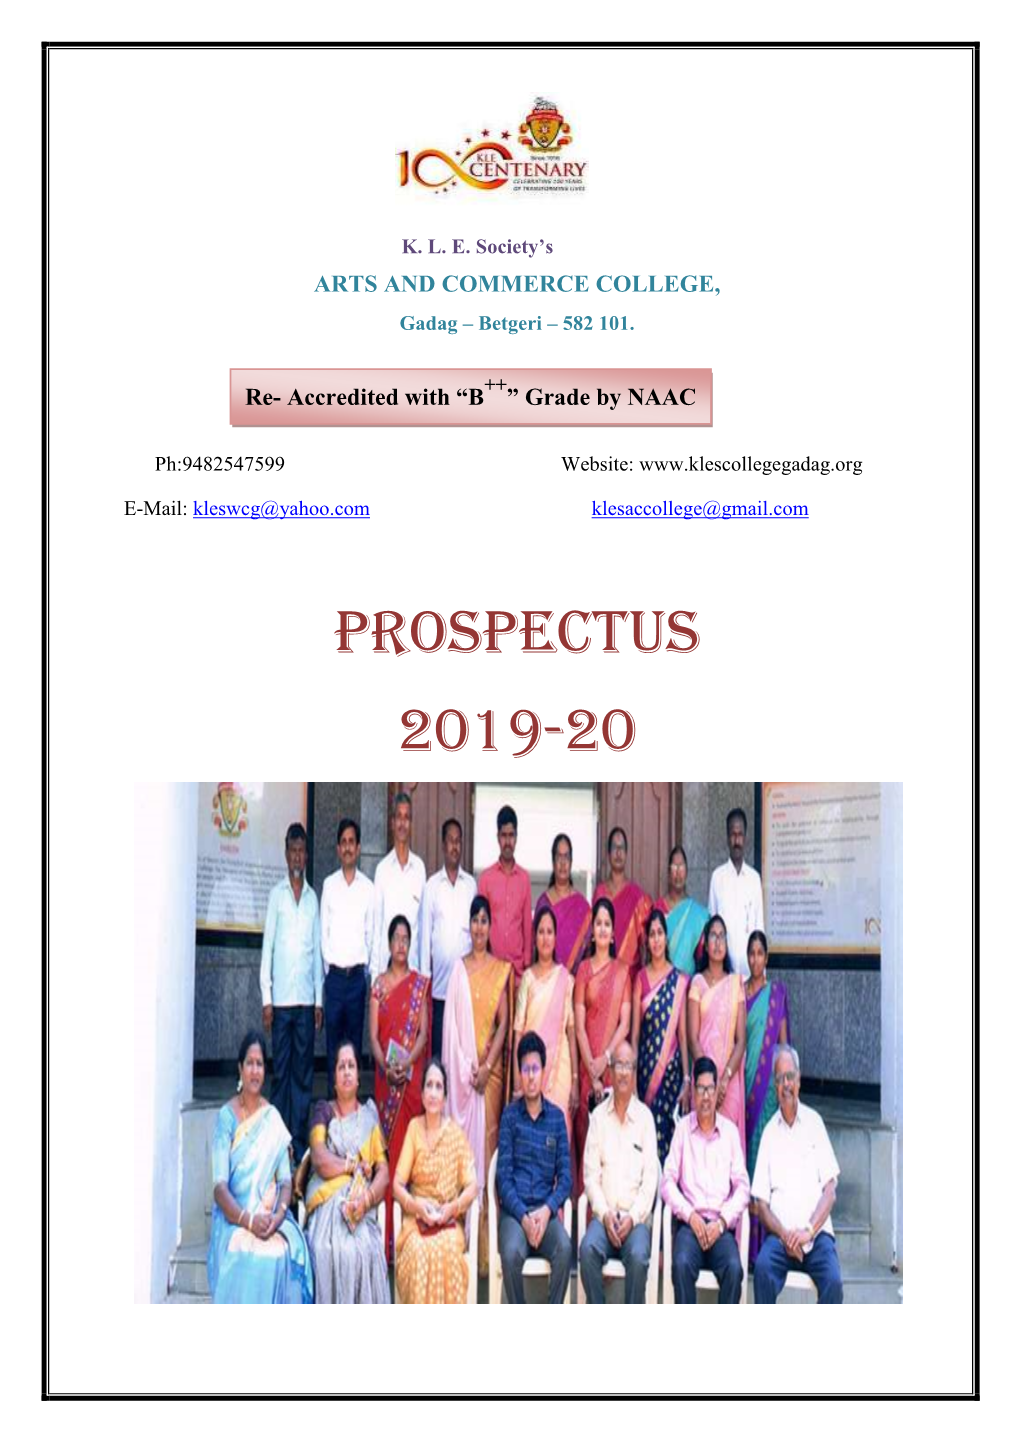 Prospectus 2019-20